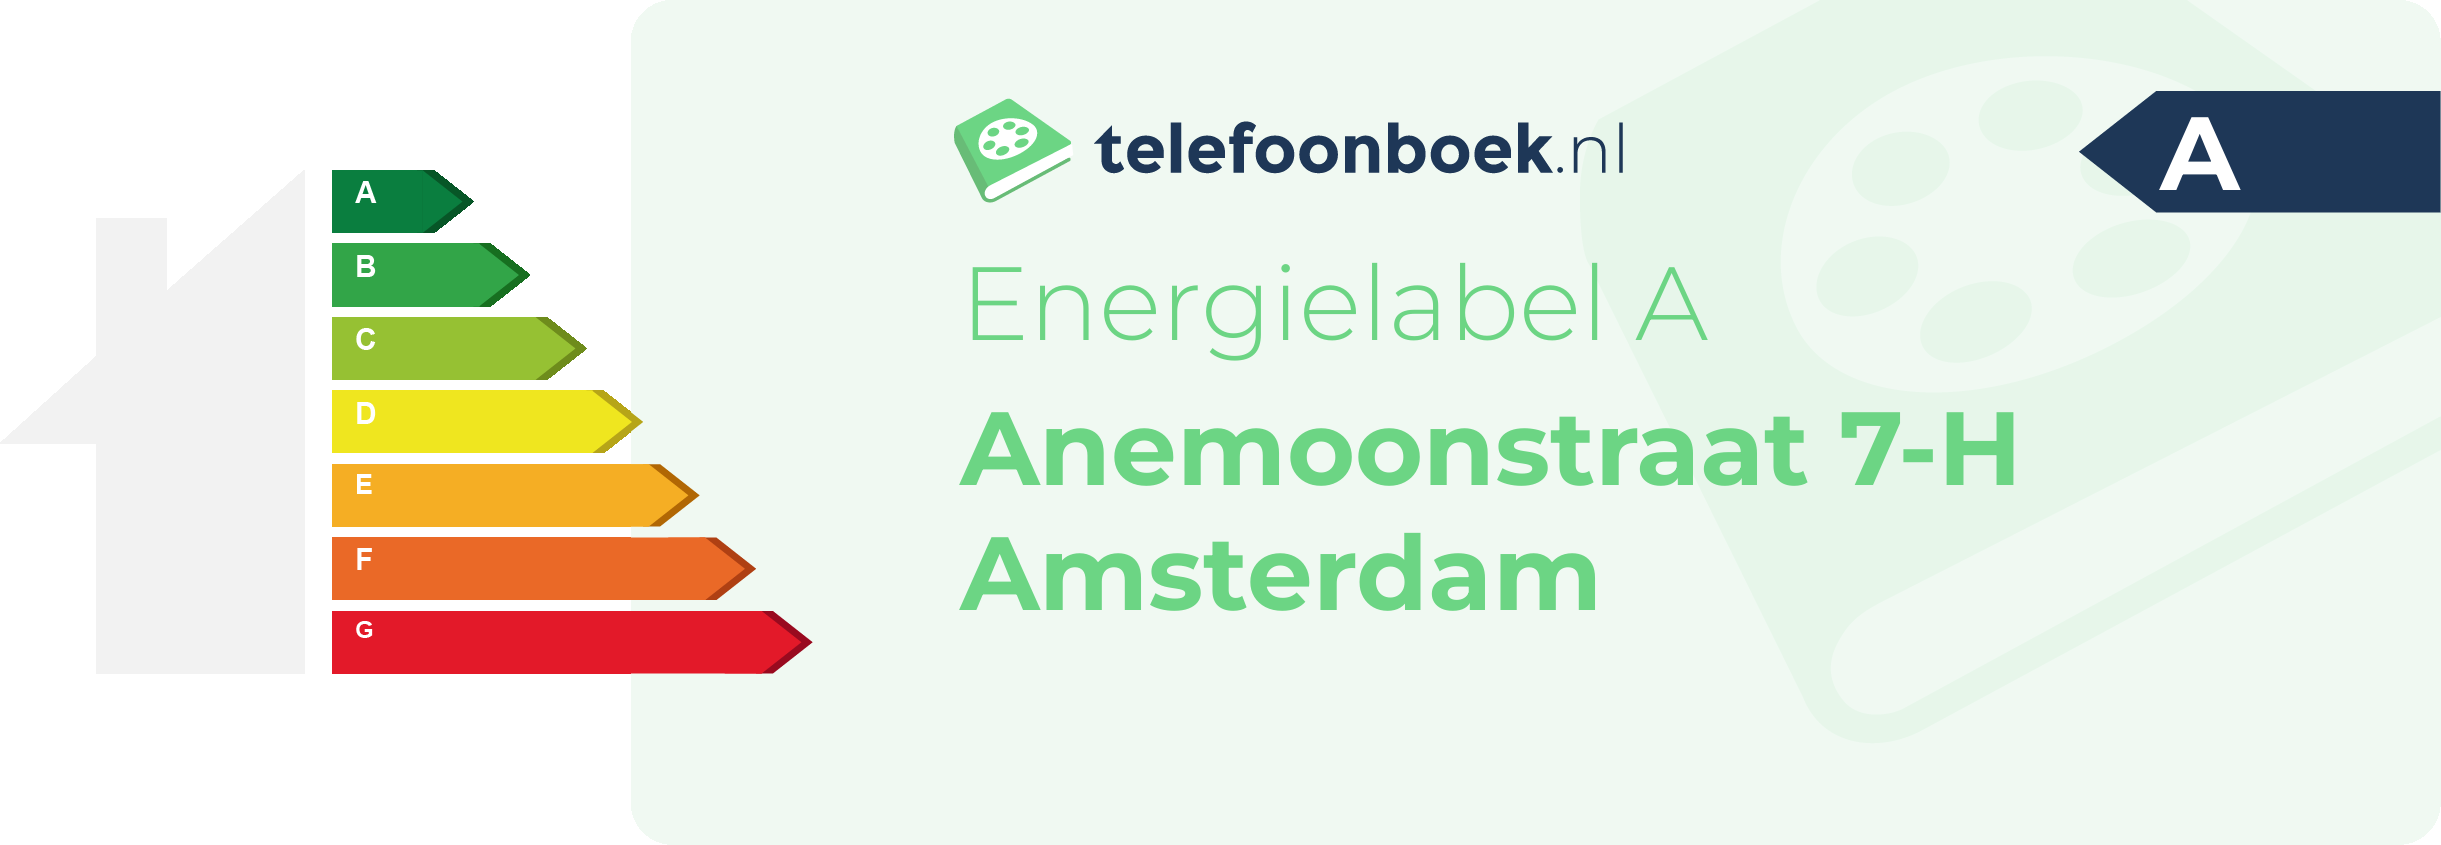 Energielabel Anemoonstraat 7-H Amsterdam